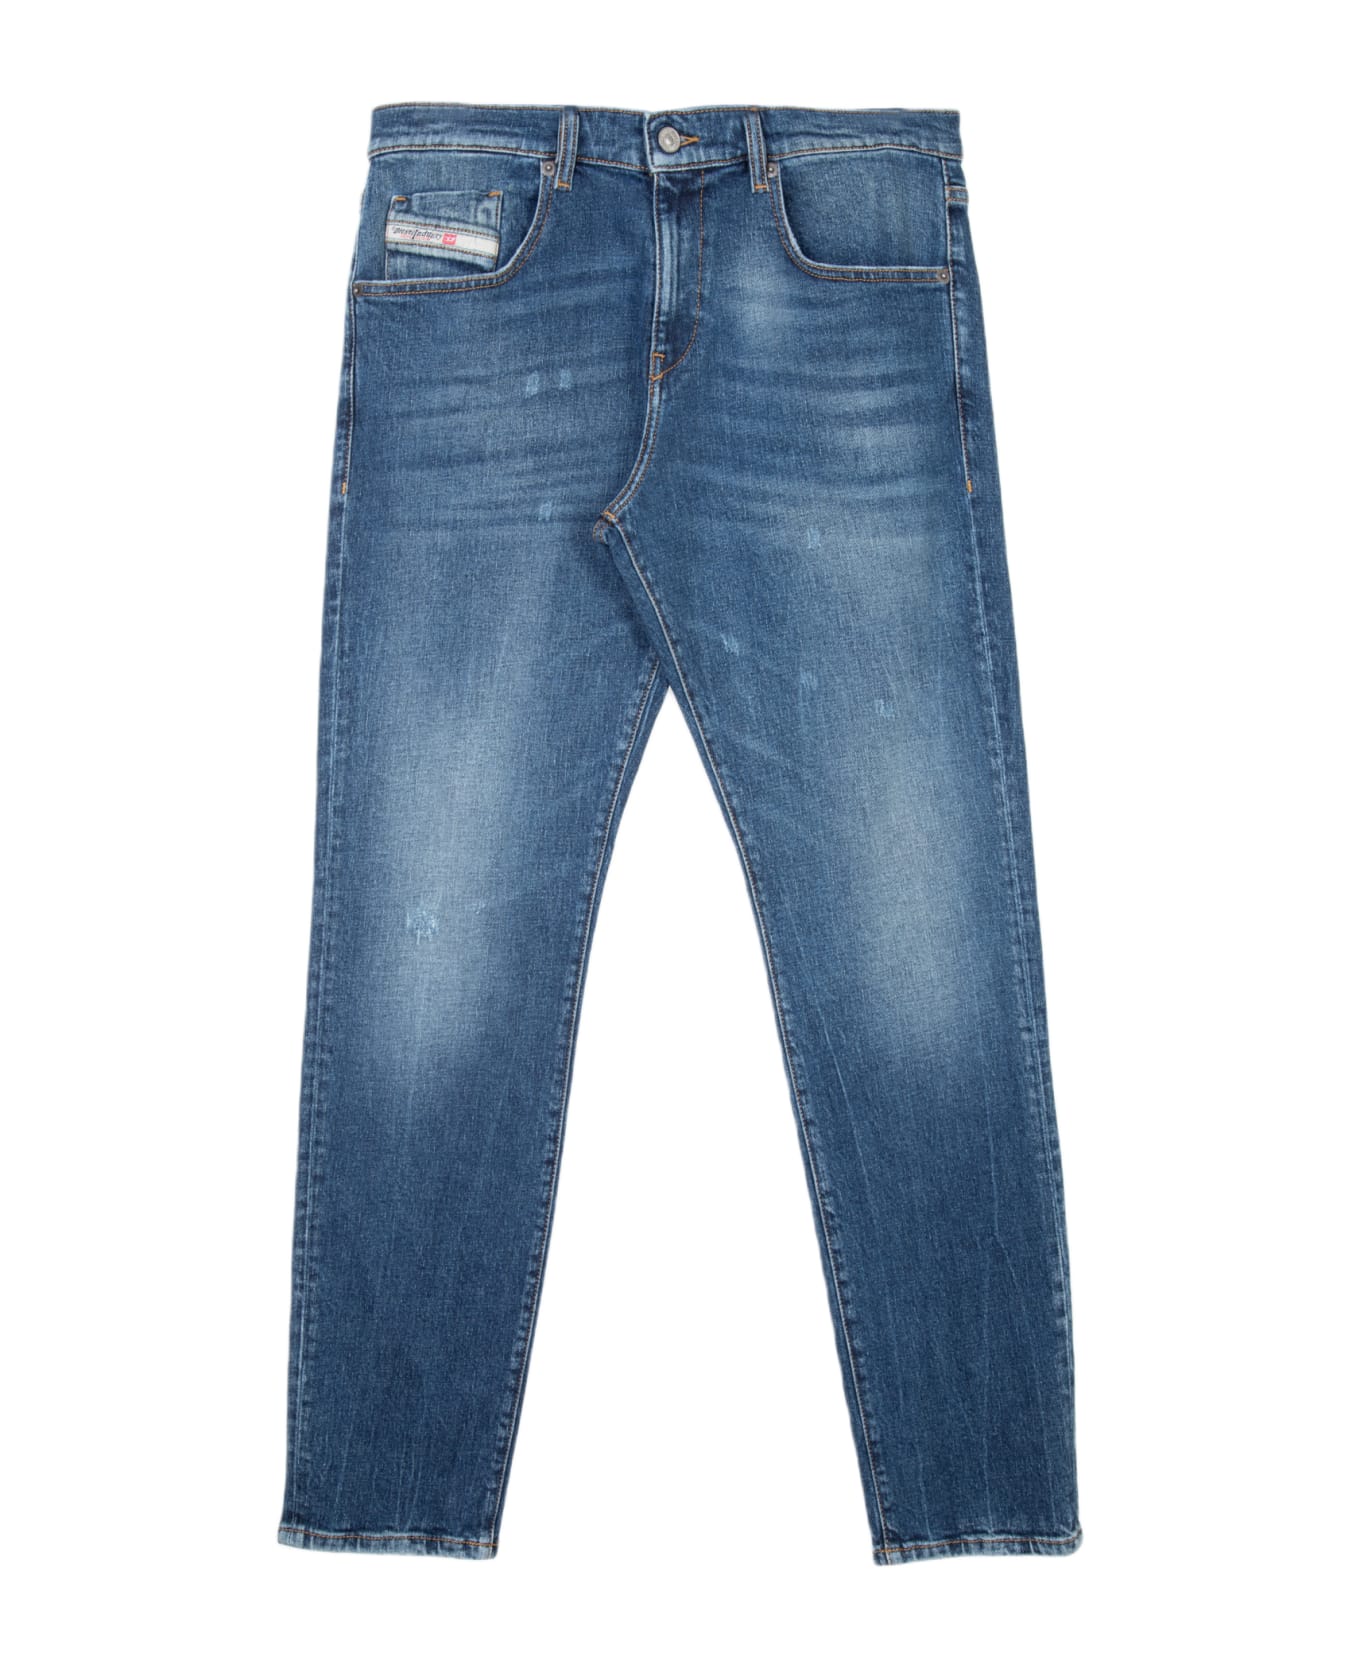 Diesel 2019 D-strukt L.30 Washed medium blue slim fit jeans - 2019 D-Strukt - Denim blu ボトムス